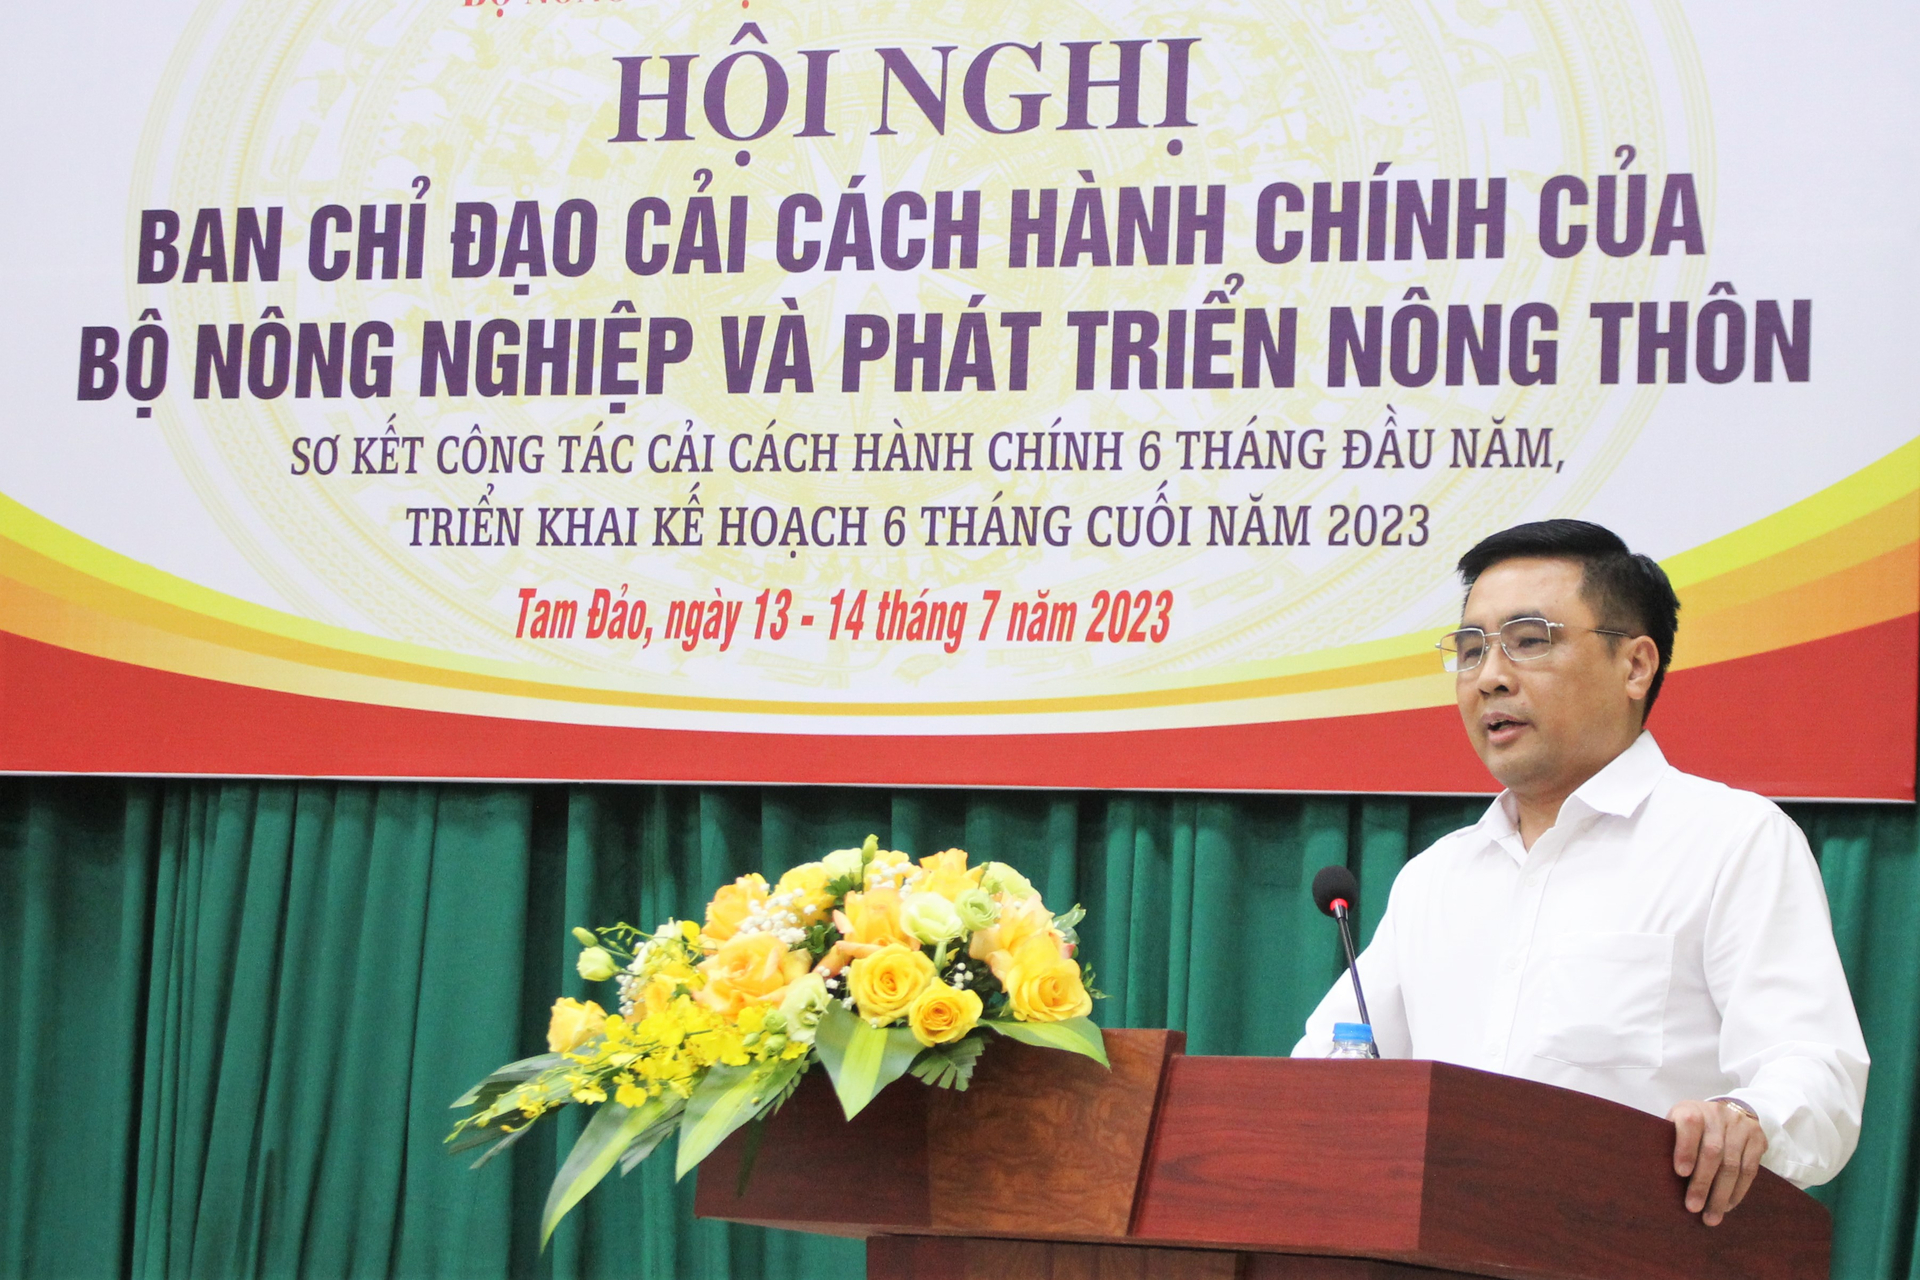 Thứ trưởng Bộ NN-PTNT Nguyễn Quốc Trị lưu ý các đơn vị, làm tốt công tác CCHC là tạo thuận lợi cho công việc của chính đơn vị mình. Ảnh: Trung Quân.